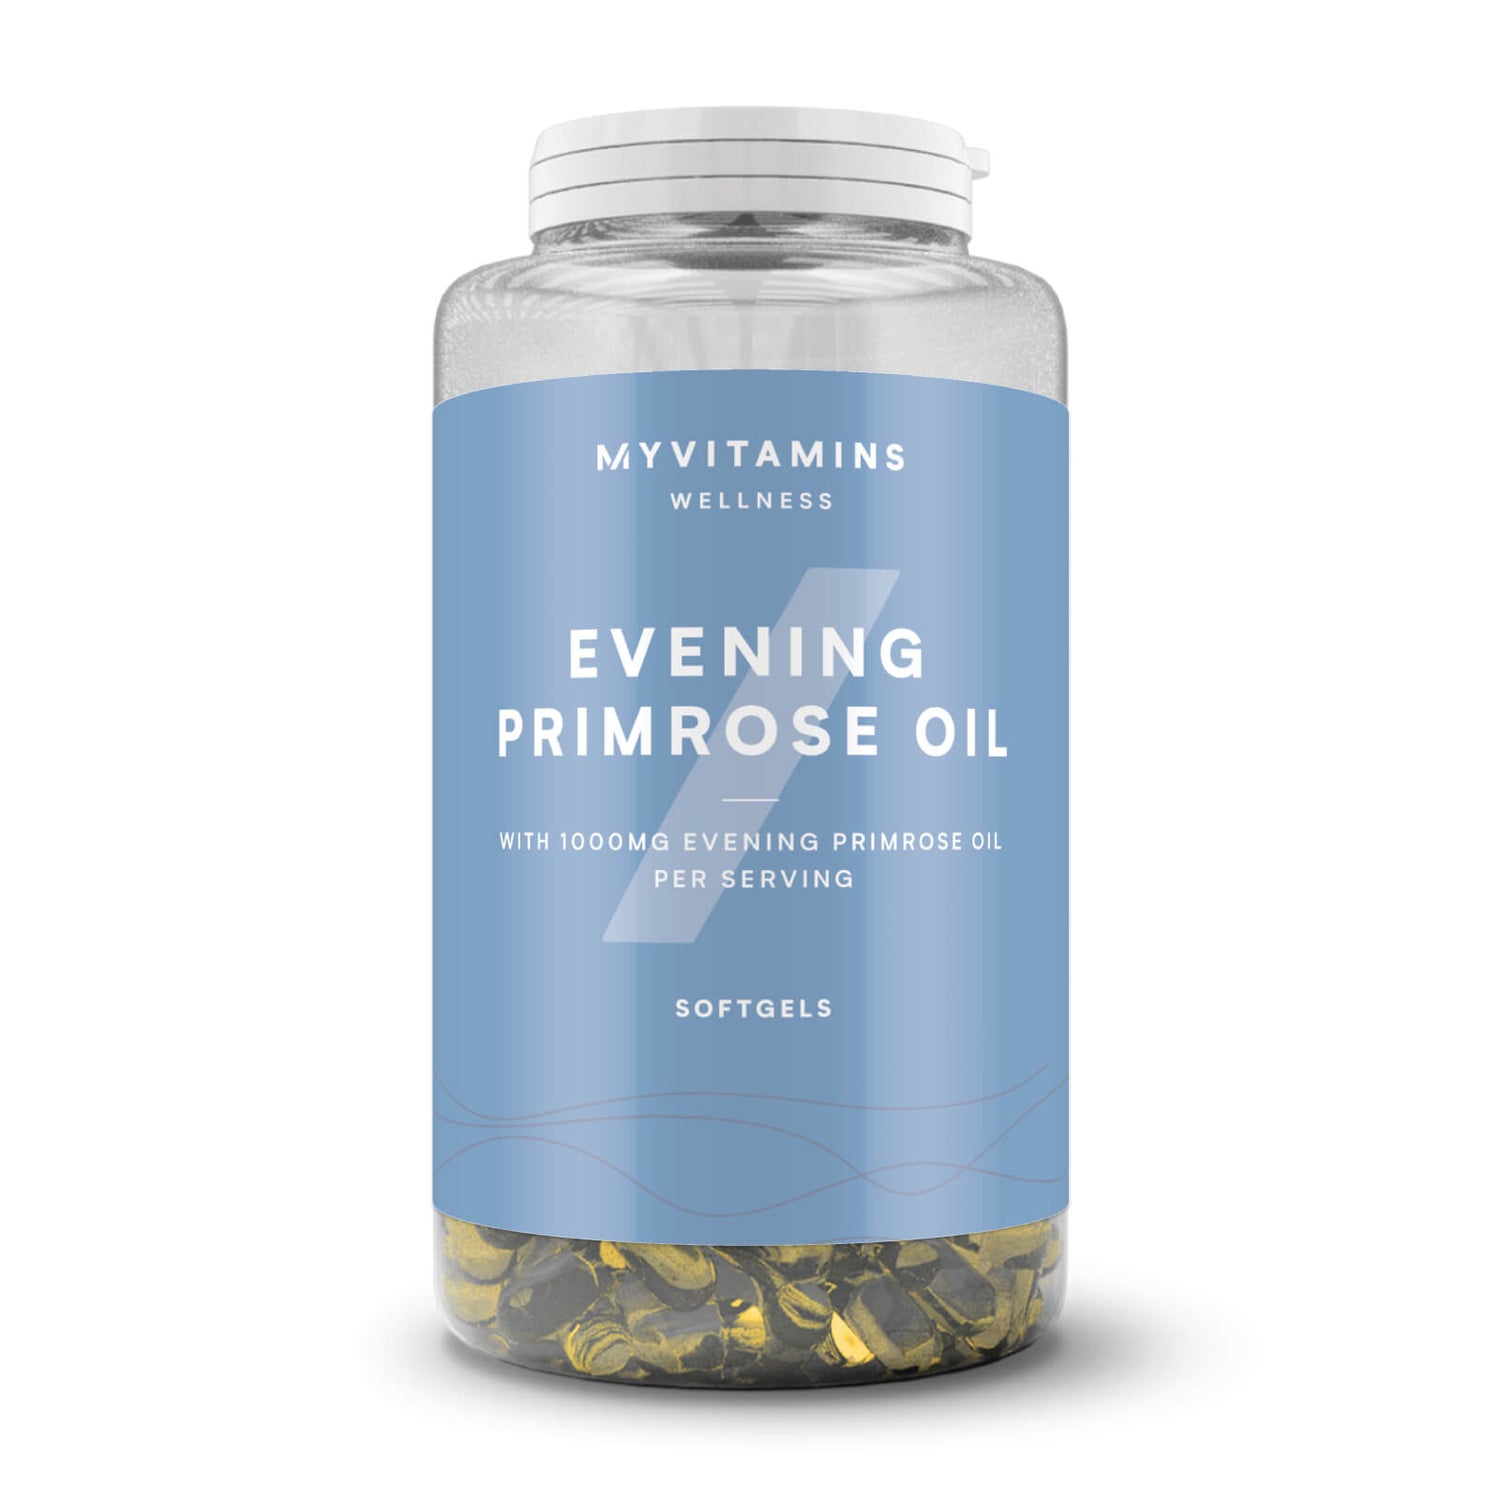 Primrose oil evening Evening Primrose